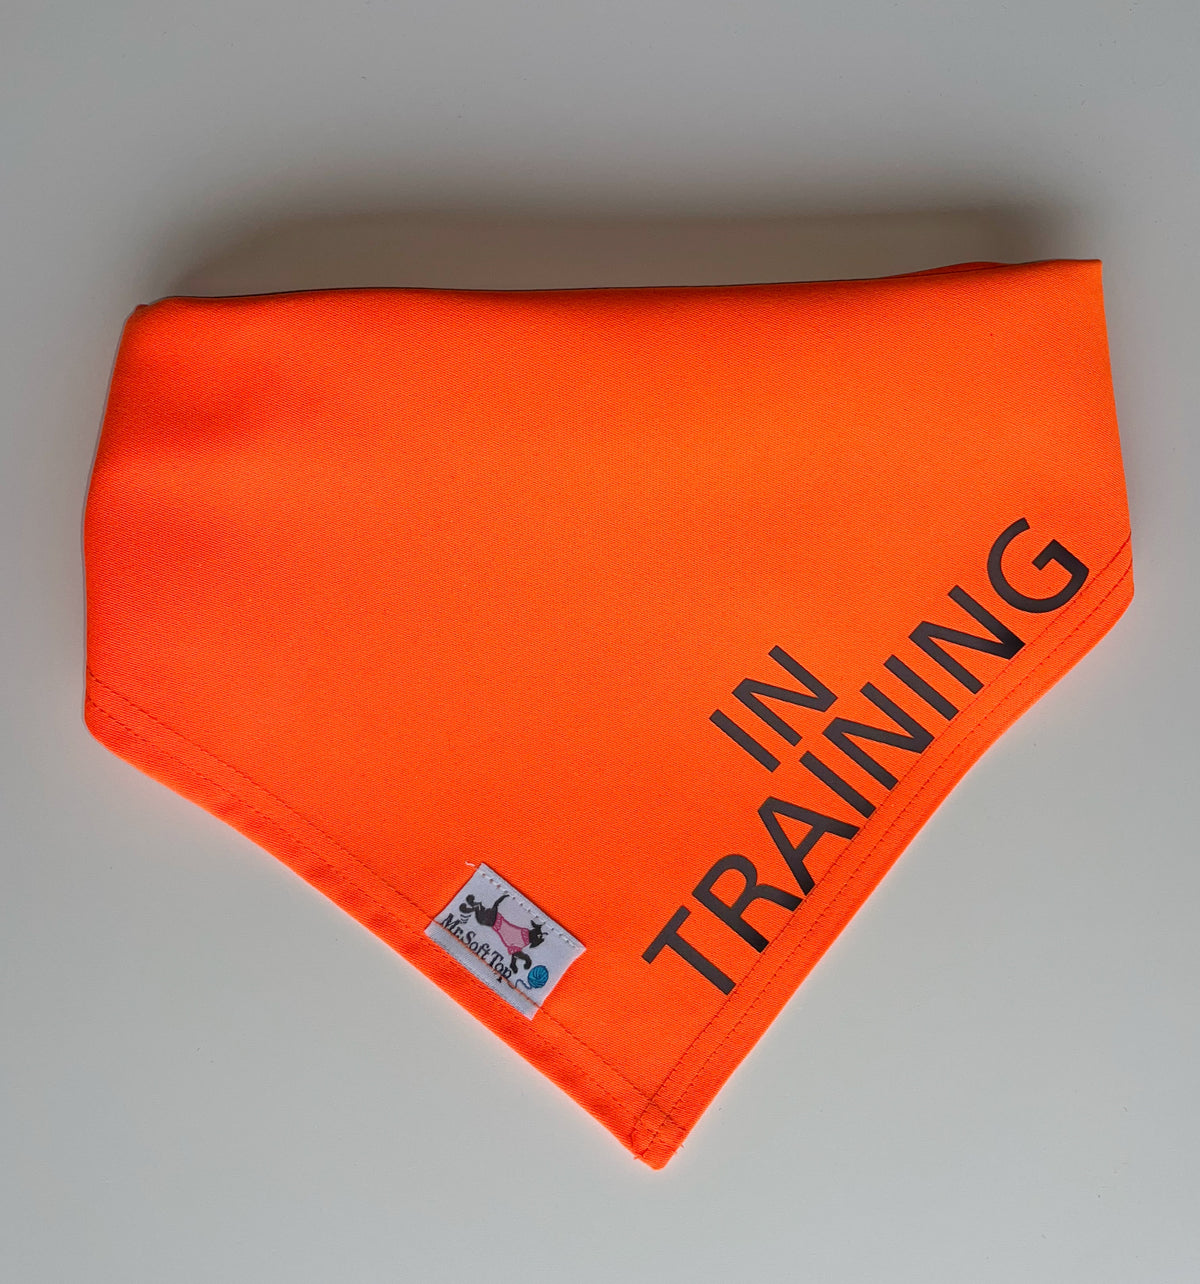 Electric Orange “In Training” Dog Bandana